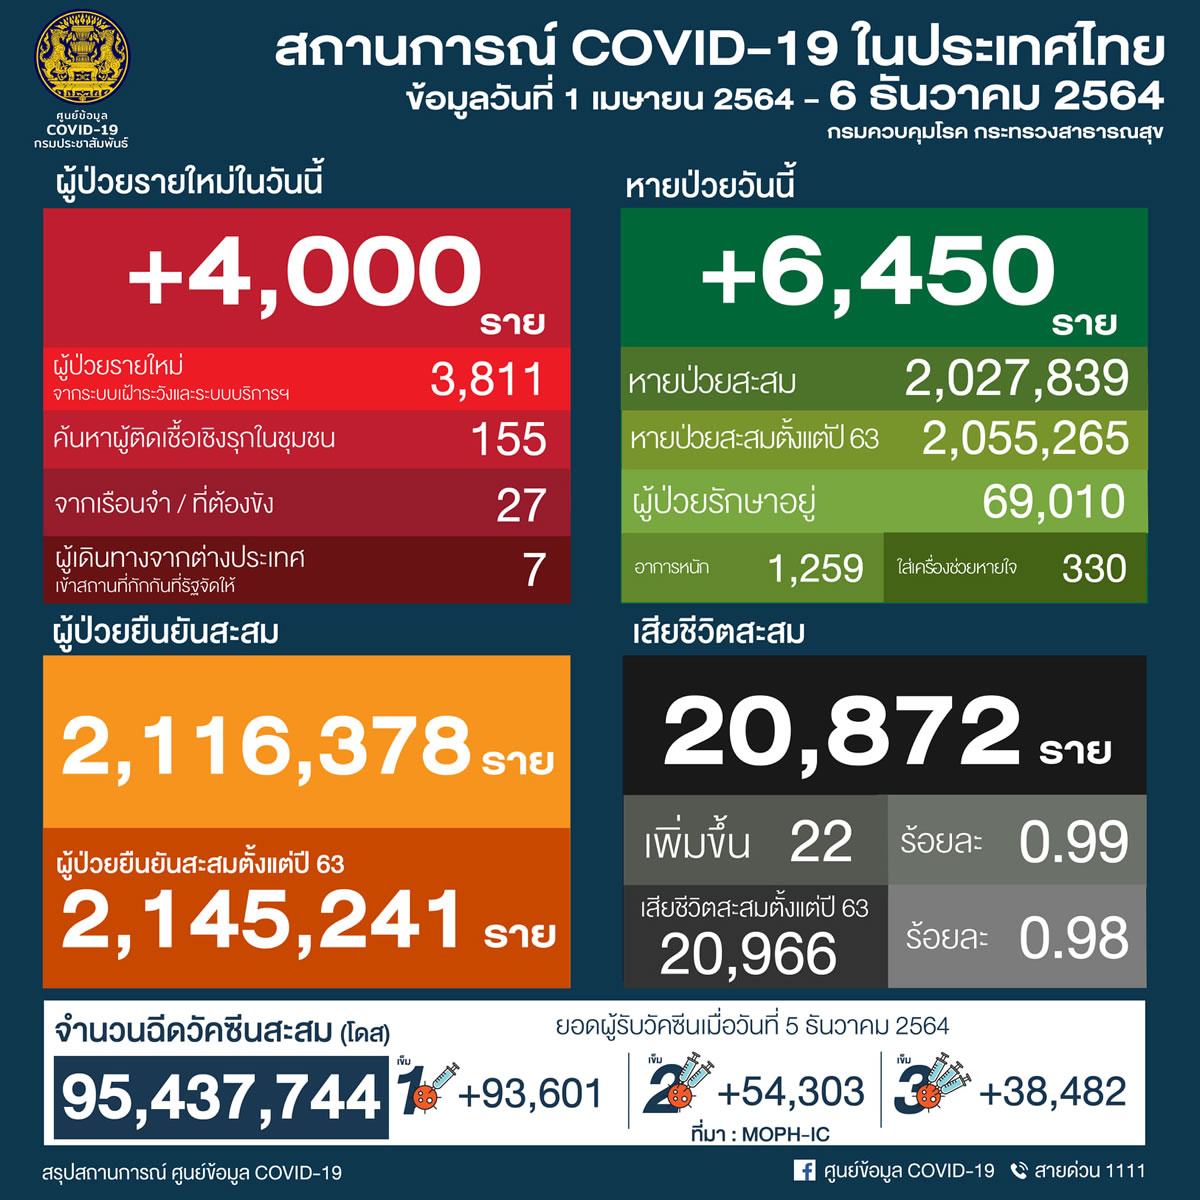 タイ 4,000人陽性 22人死亡／バンコク 782人陽性 2人死亡／チェンマイ 96人陽性［2021年12月6日発表］